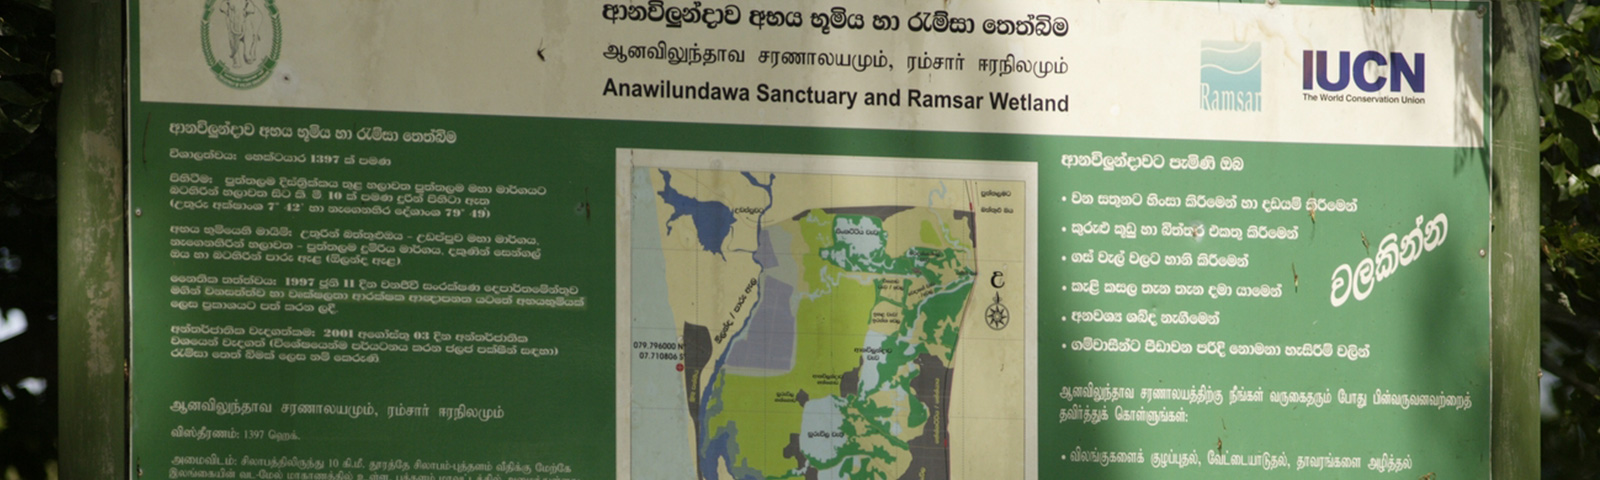 Anawilundawa Sanctuary, Sri Lanka